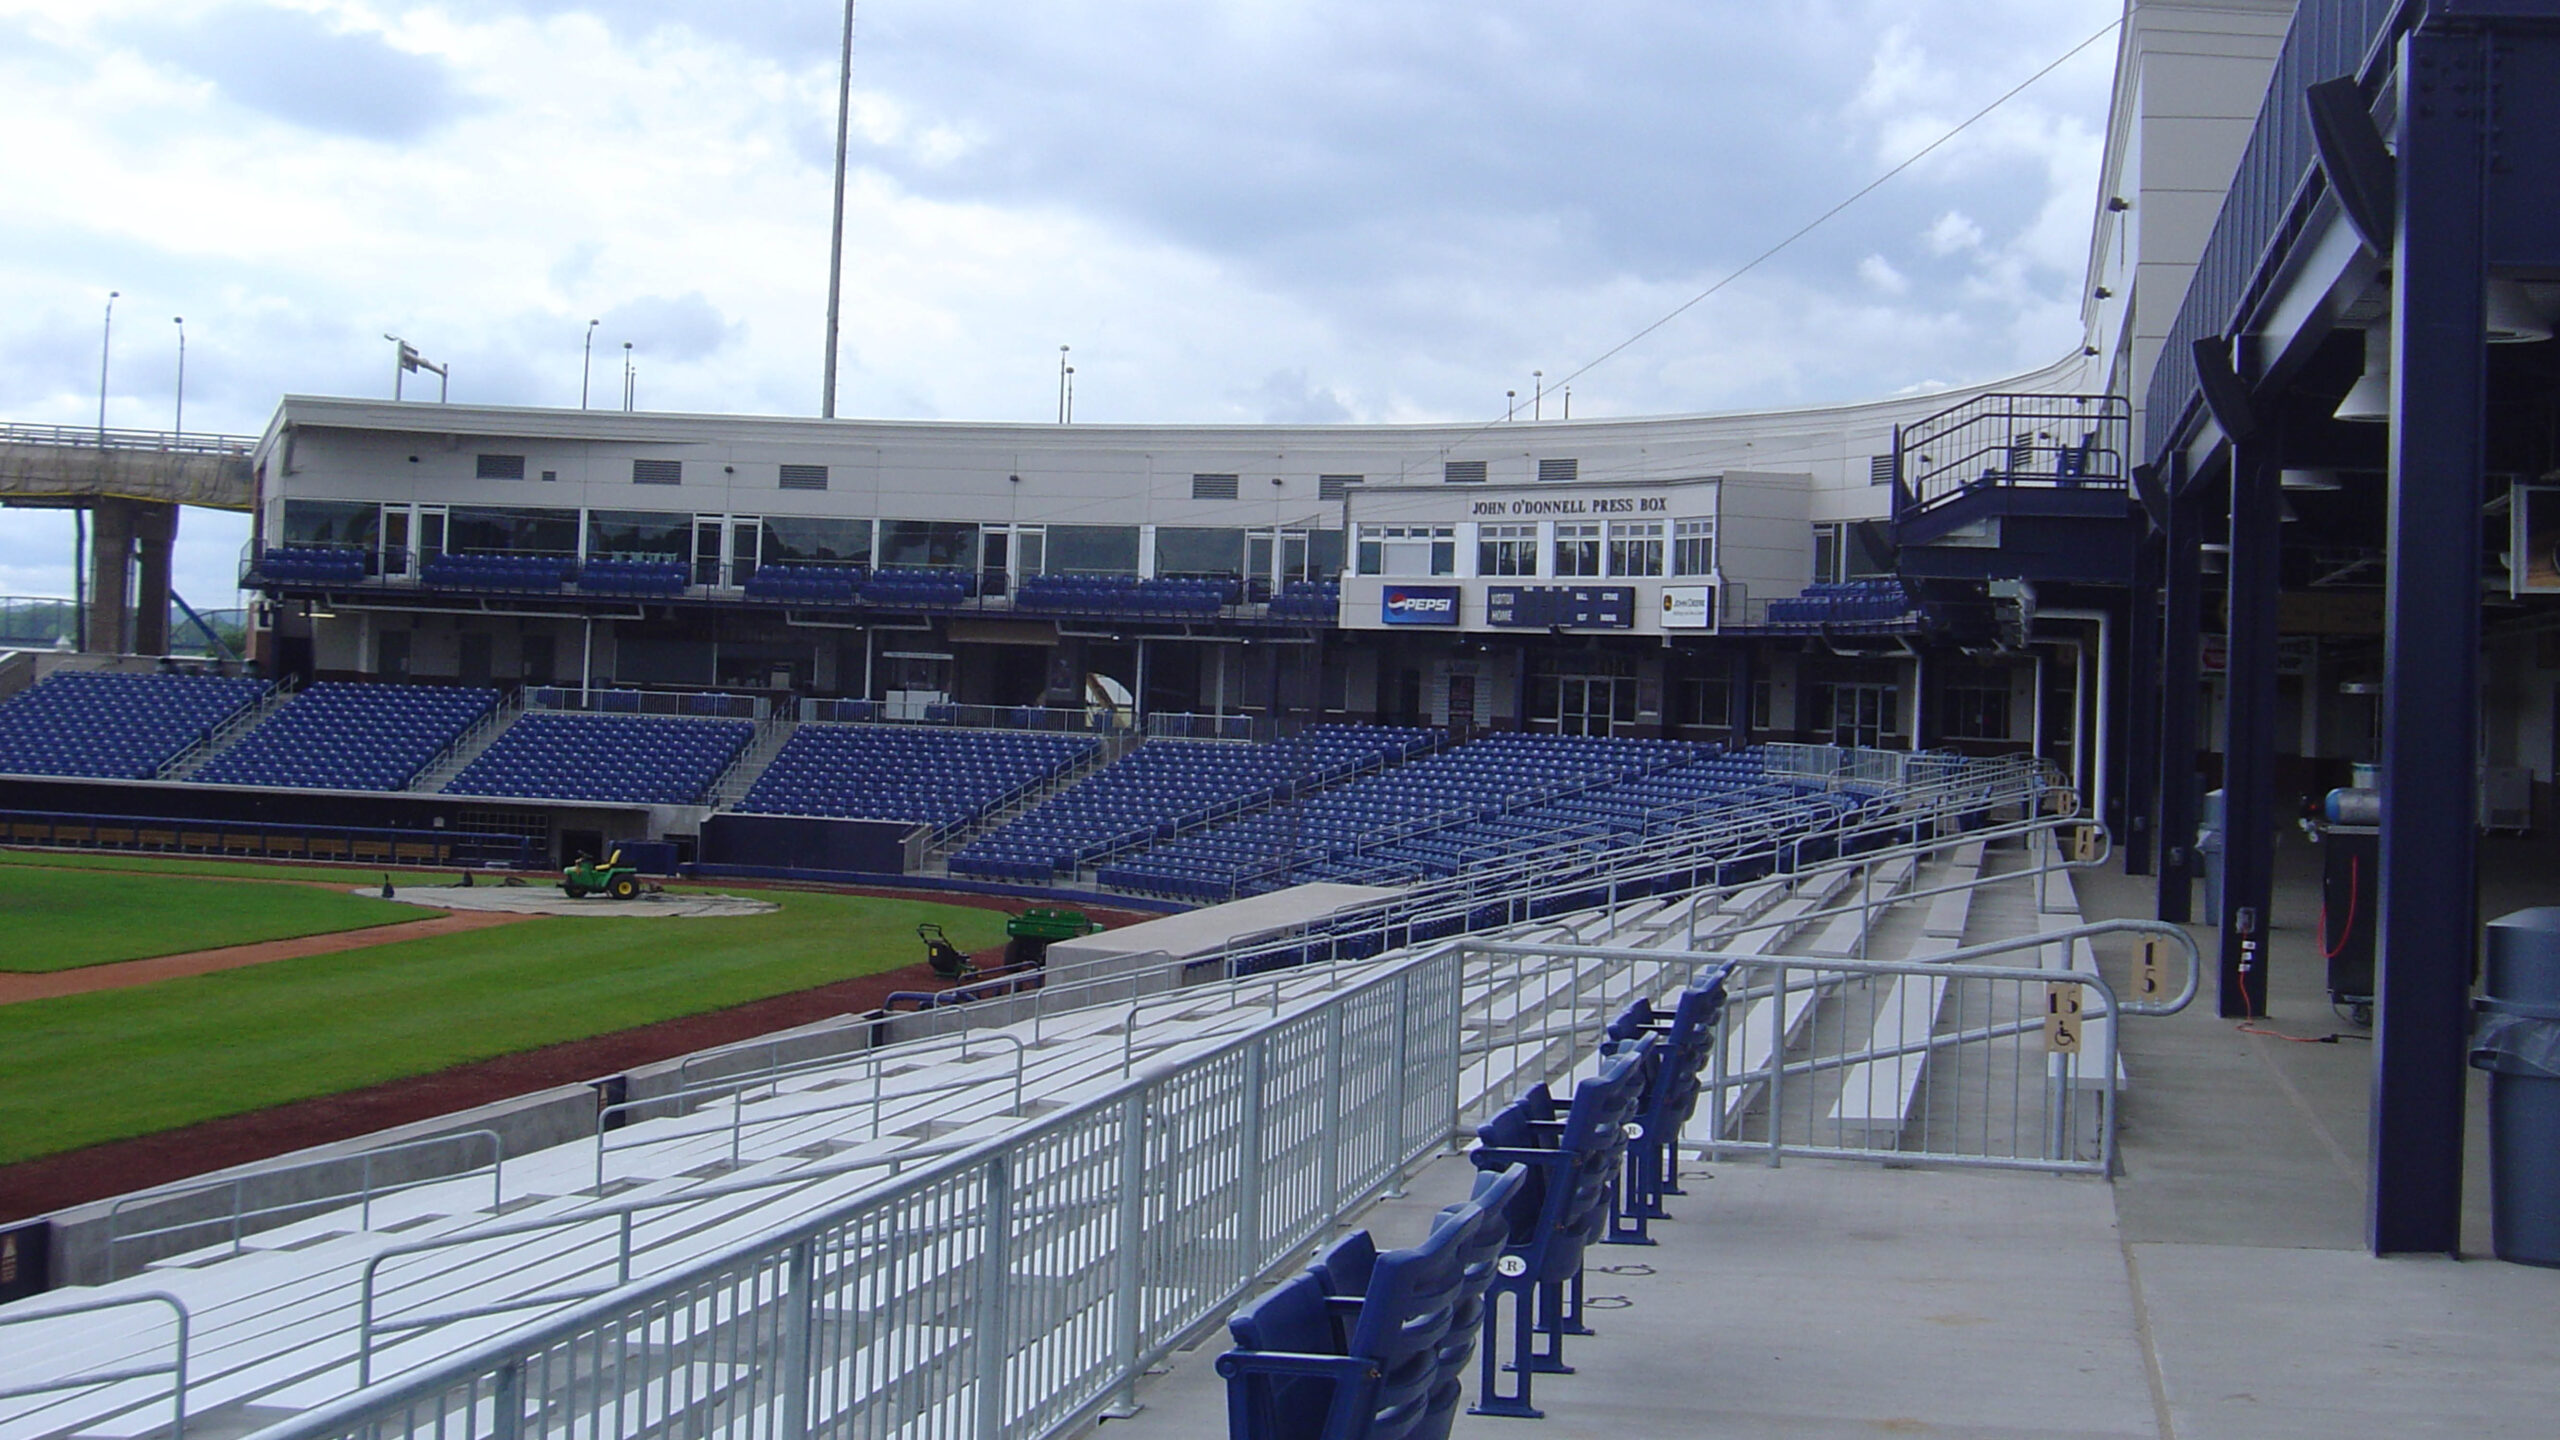 Stadium bleachers overlooking a baseball diamond